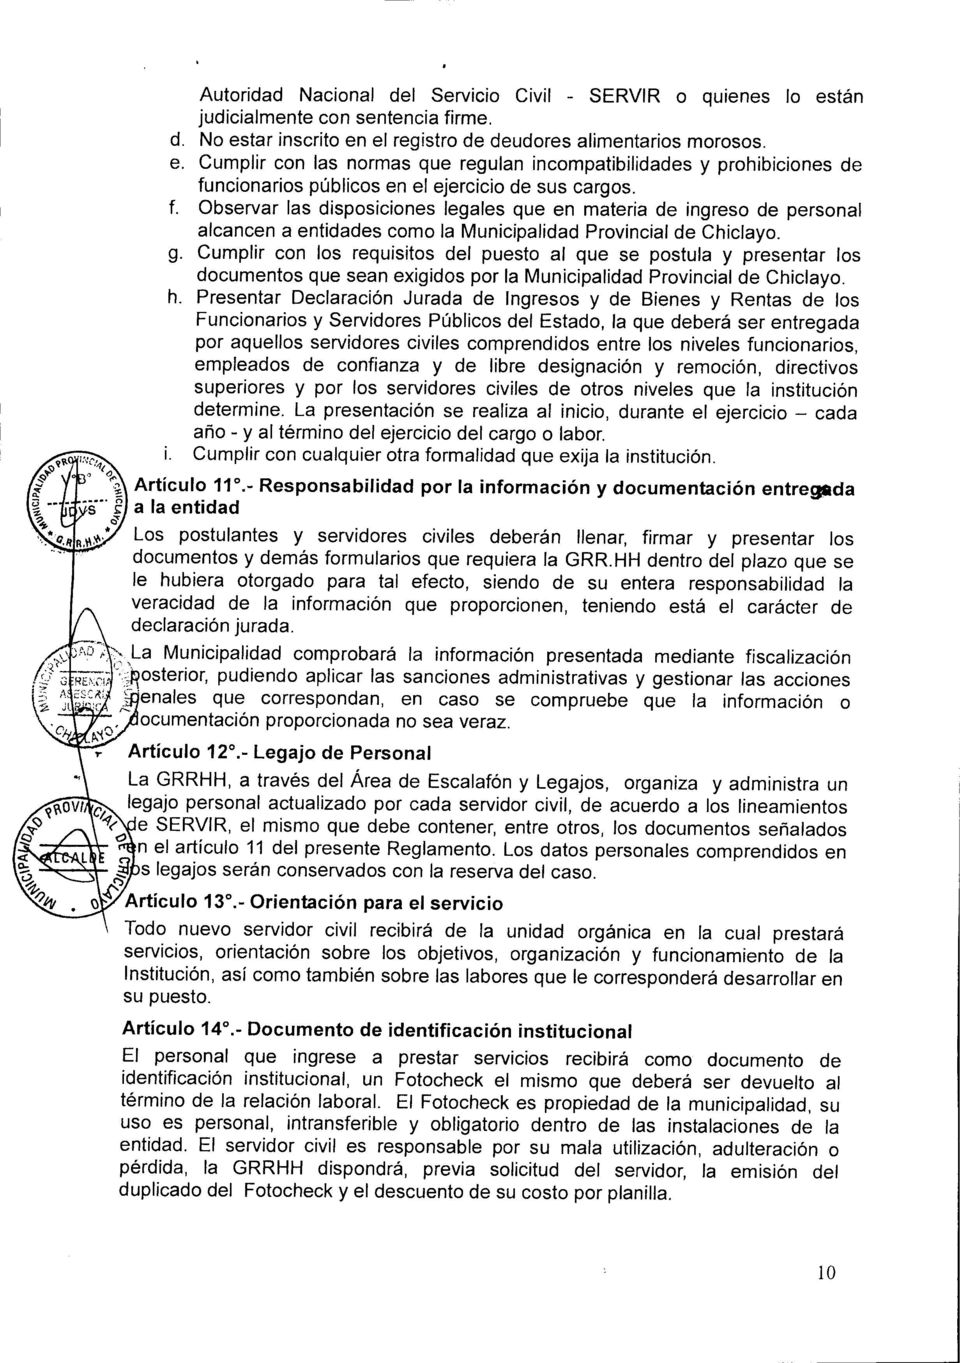 Cumplir con los requisitos del puesto al que se postula y presentar los documentos que sean exigidos por la Municipalidad Provincial de Chiclayo. h.